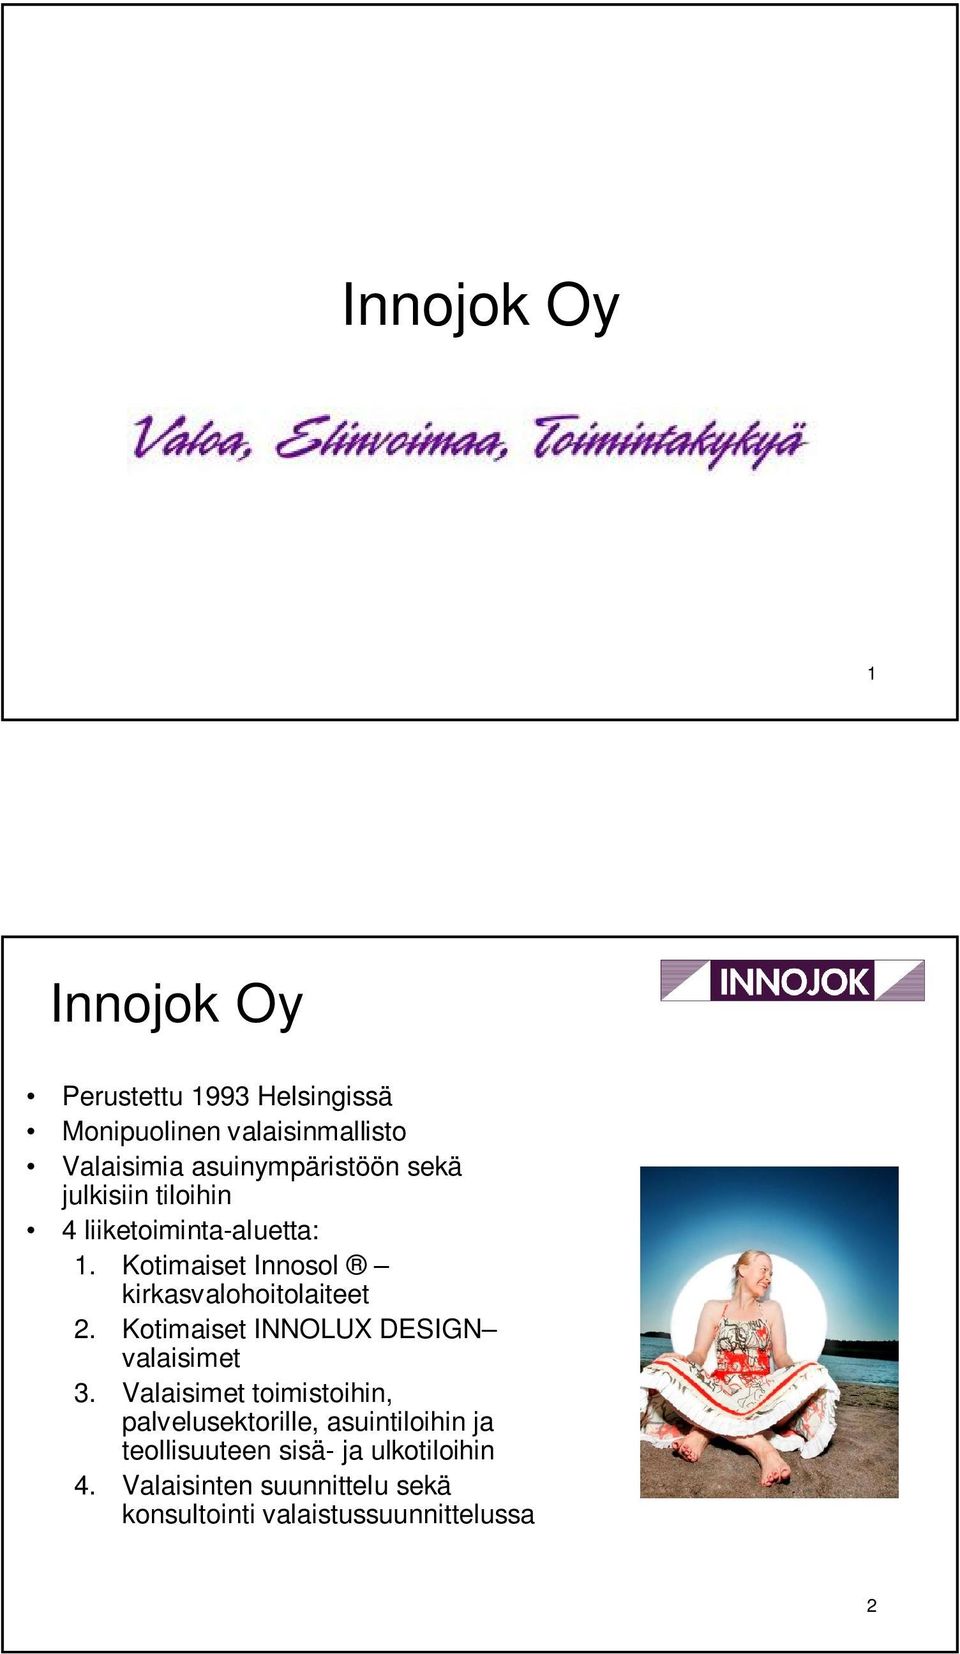 Kotimaiset Innosol kirkasvalohoitolaiteet 2. Kotimaiset INNOLUX DESIGN valaisimet 3.